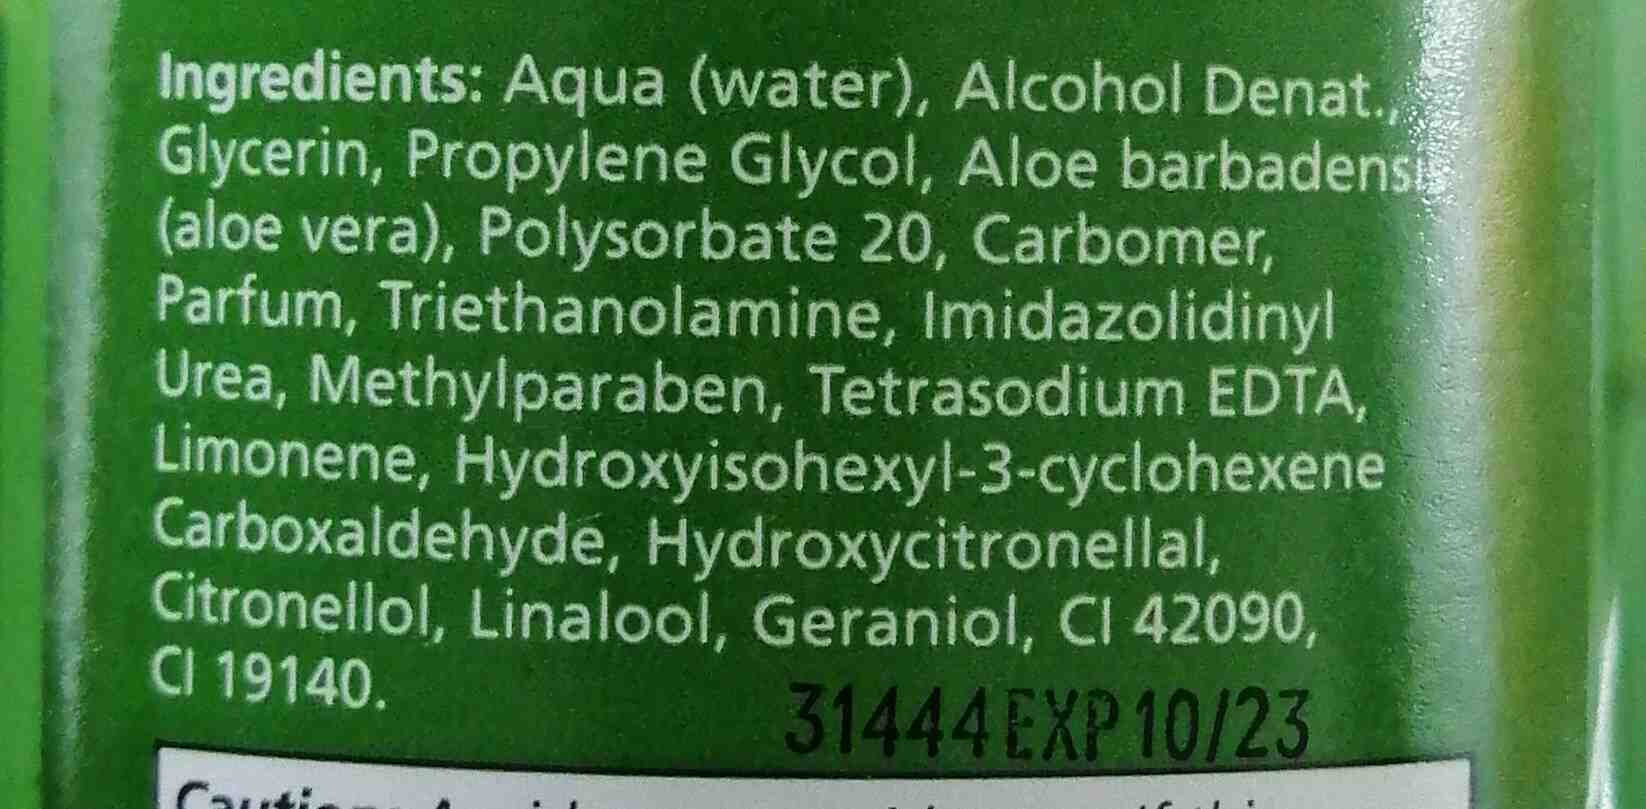 Health aid aloe vera gel - Ingredients - en